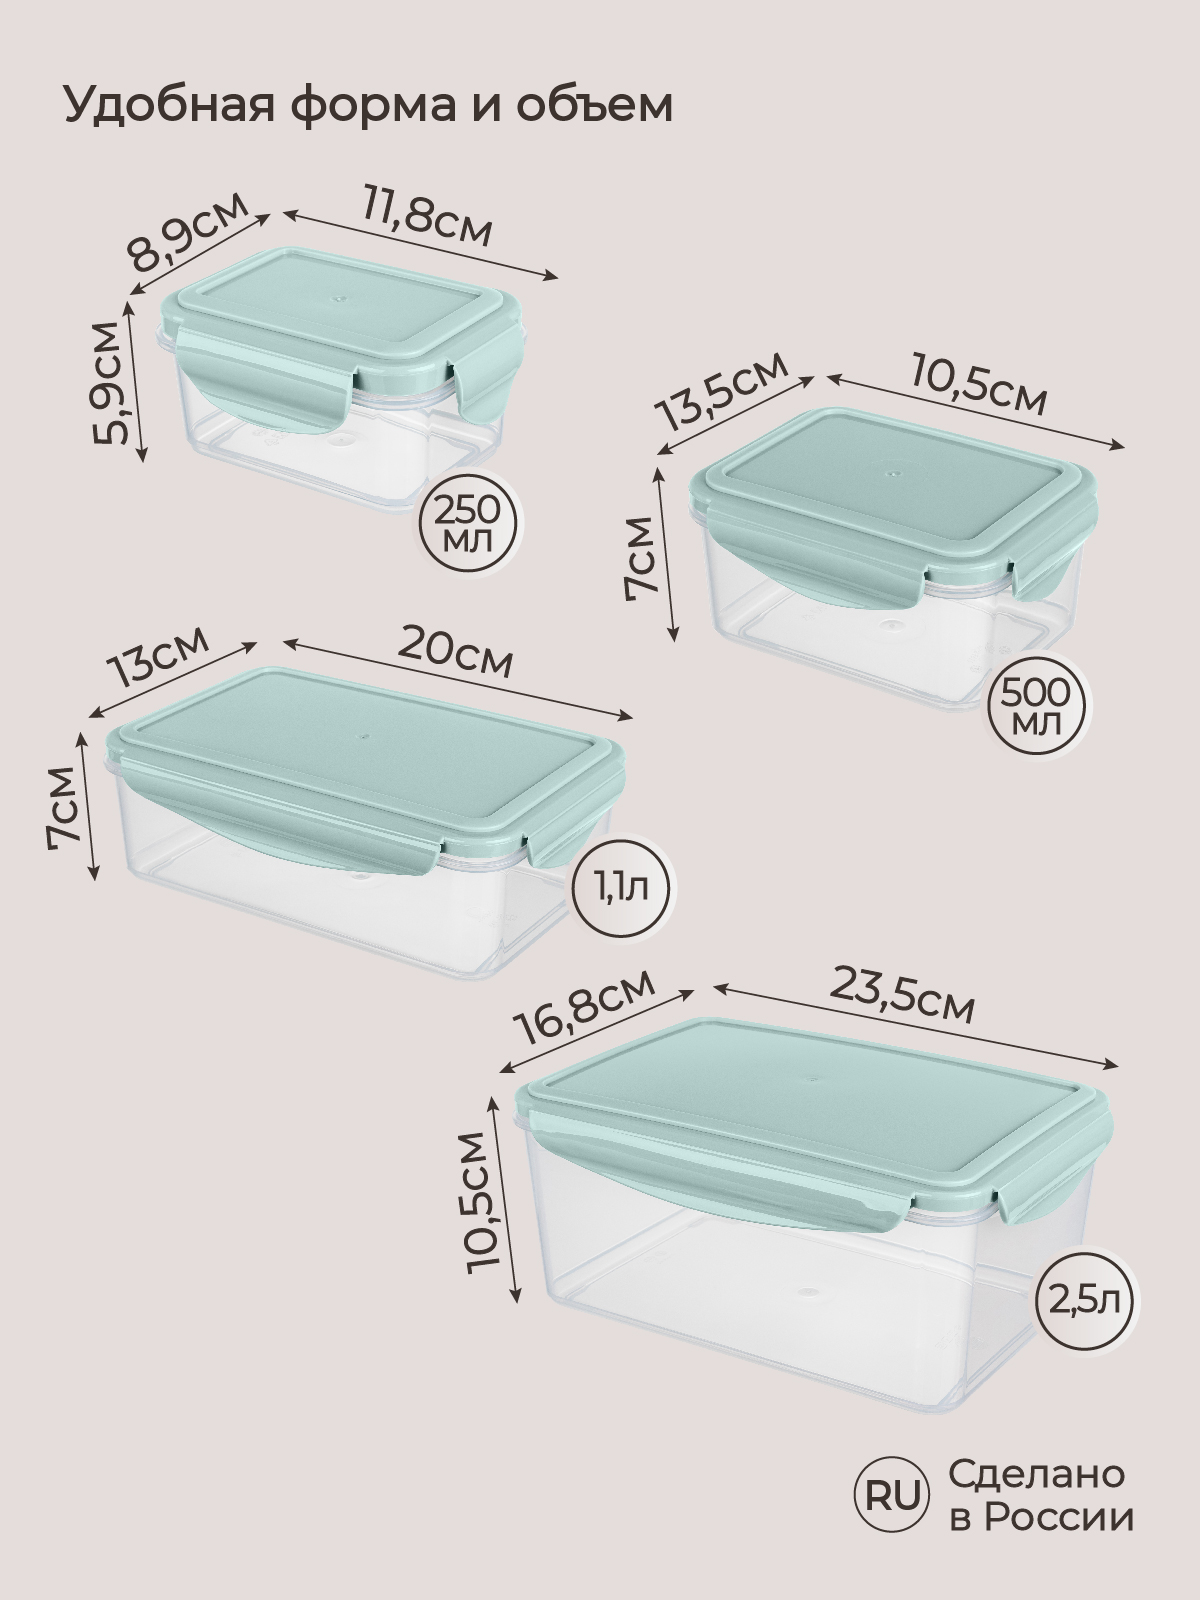 Комплект контейнеров Phibo для холодильника и микроволновой печи Smart Lock 4 шт 2.5л+1.1л+0.5л+0.25л - фото 2